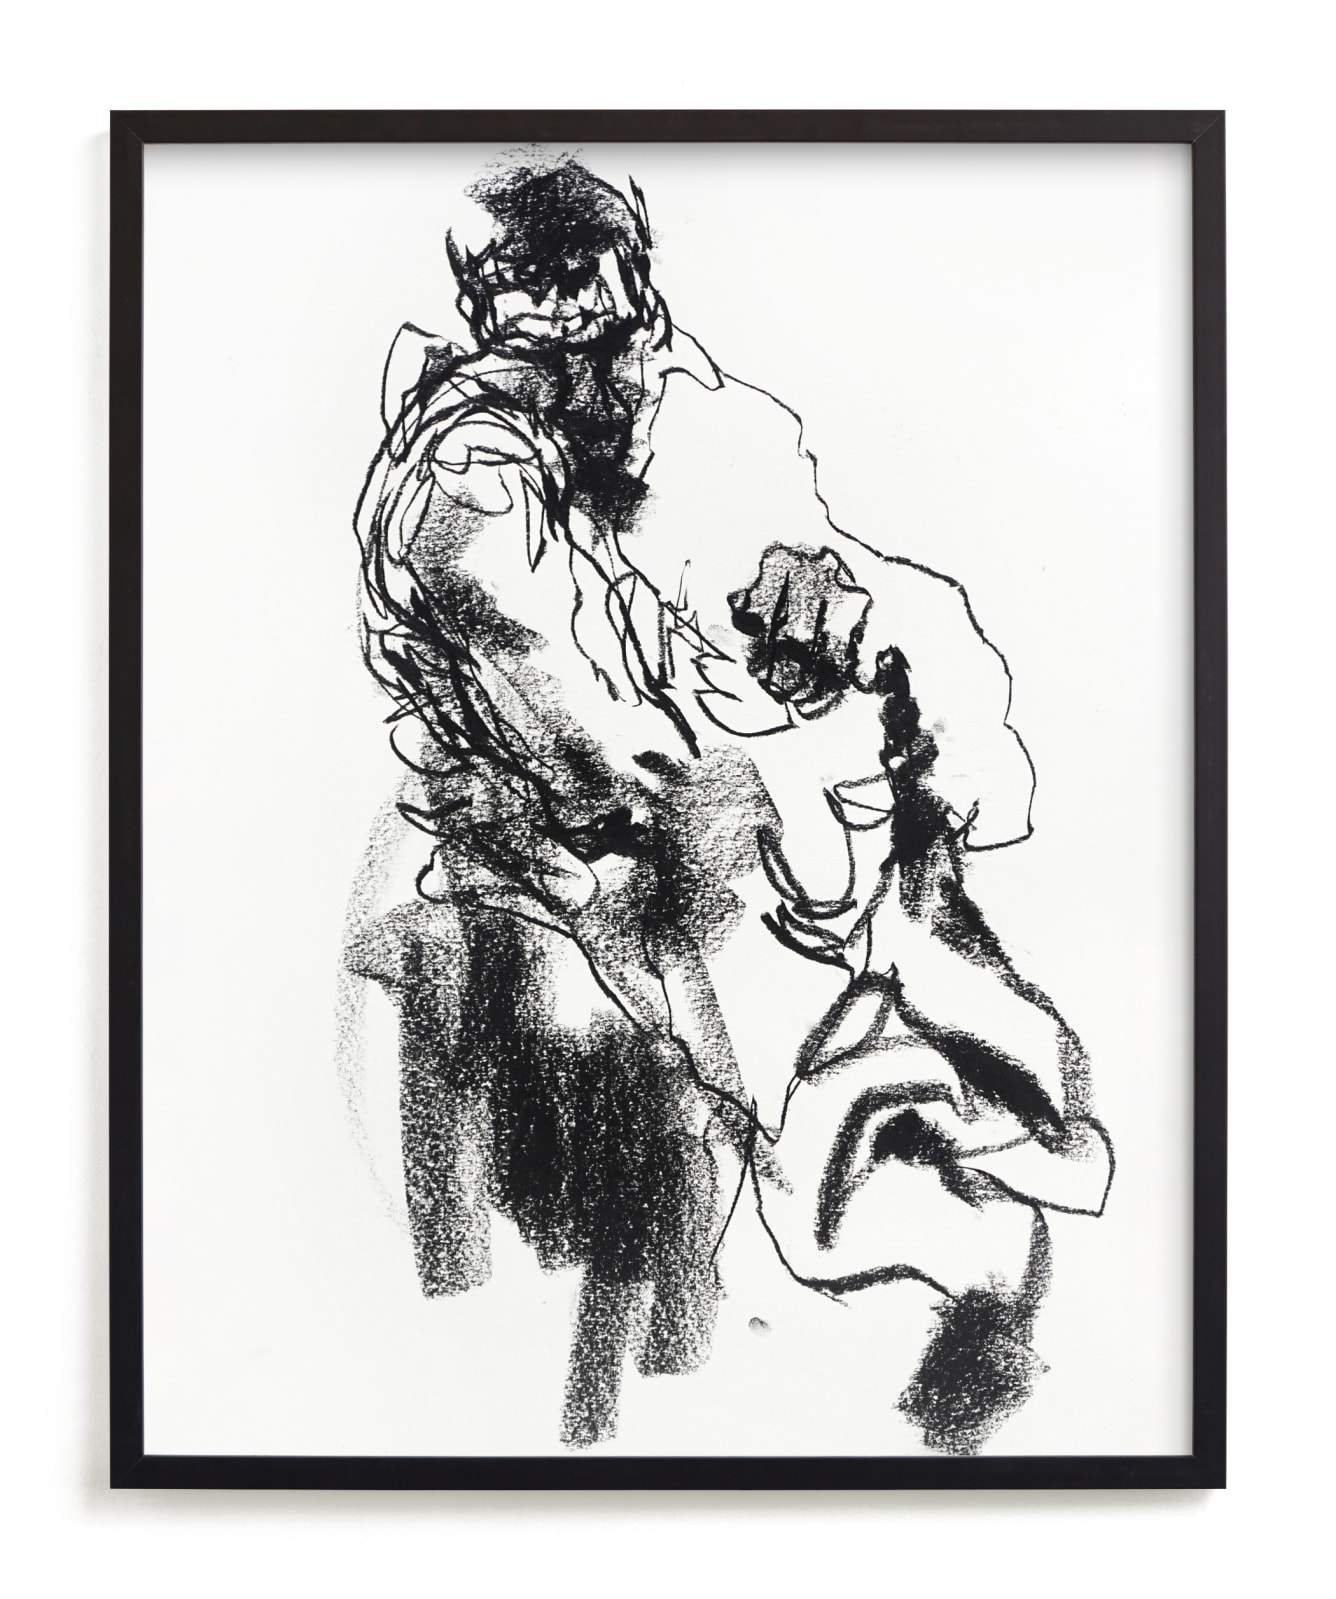 Drawing 469 - Draped Figure Fine Art Prints by Derek overfield